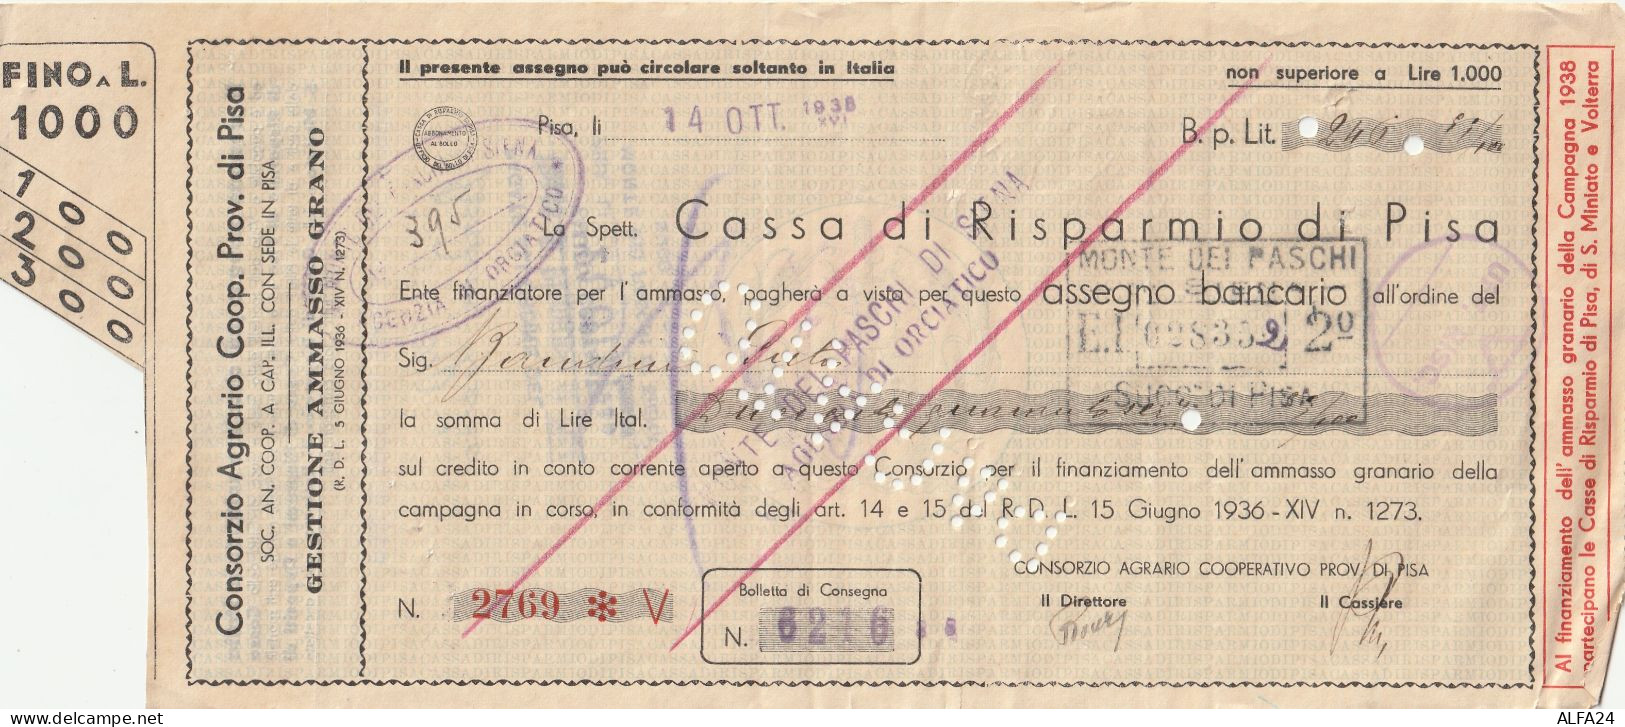 ASSEGNO 1938 CASSA RISPARMIO PISA Spiegazzato (ZP3599 - [10] Cheques En Mini-cheques